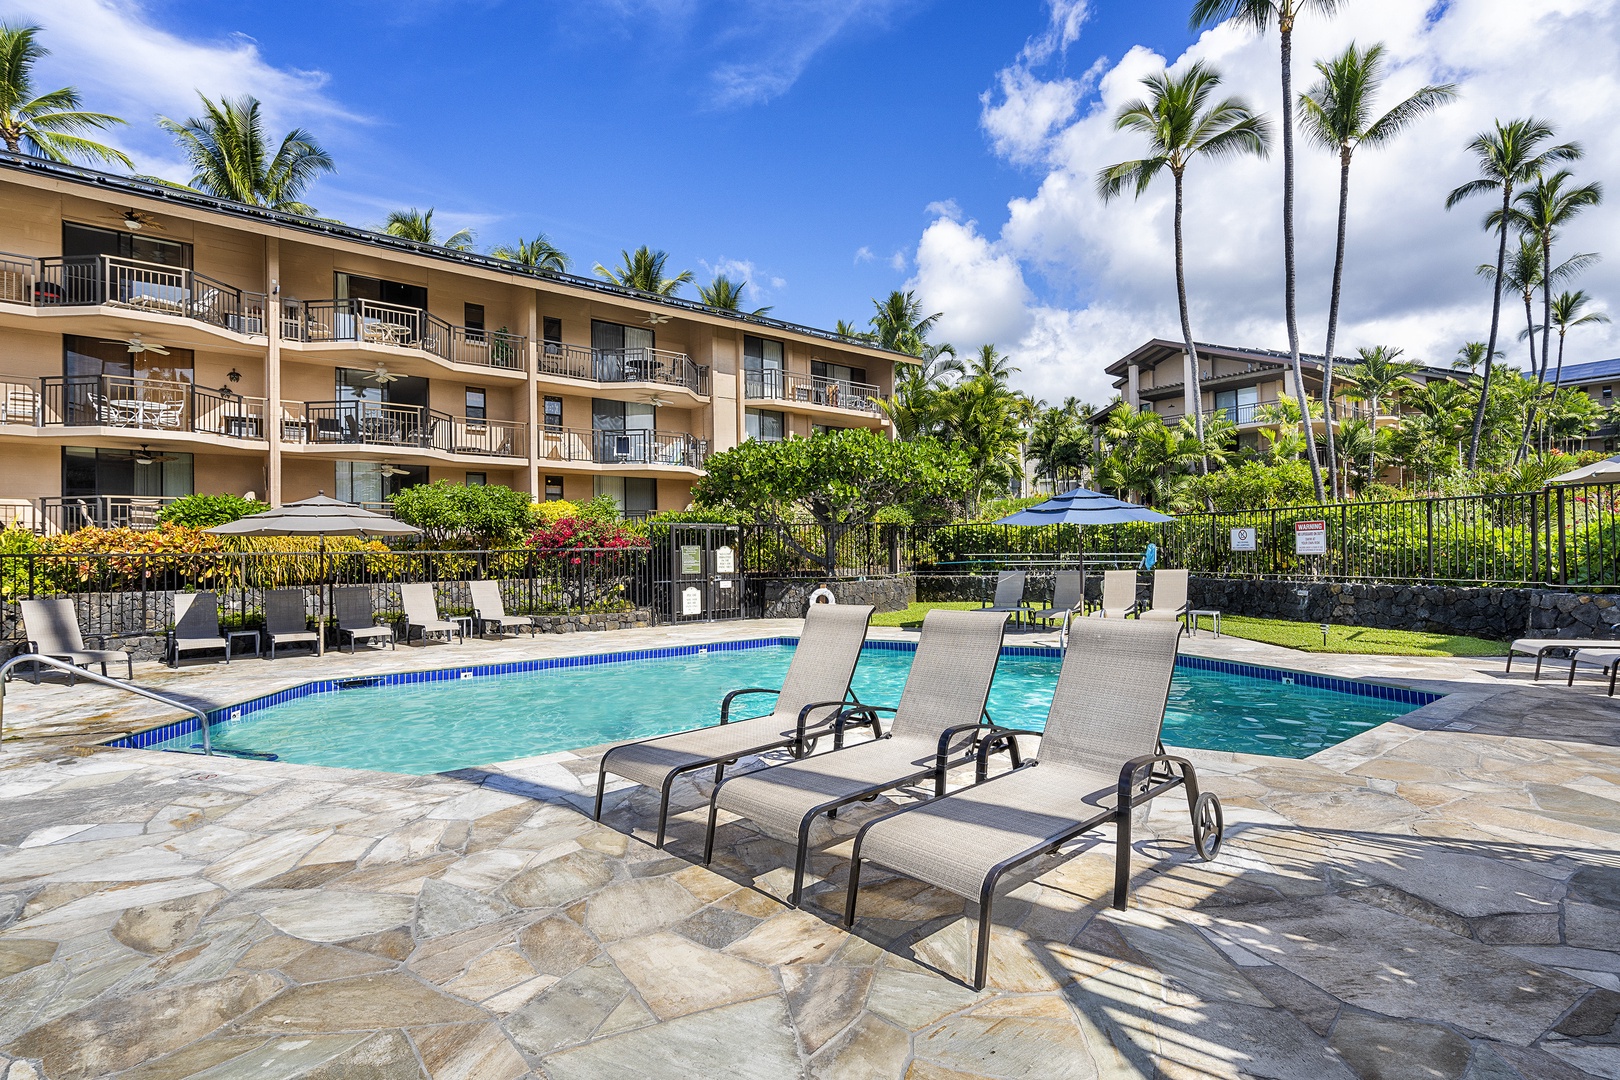 Kailua Kona Vacation Rentals, Kona Makai 6305 - Lounge pool side with a wonderful book!